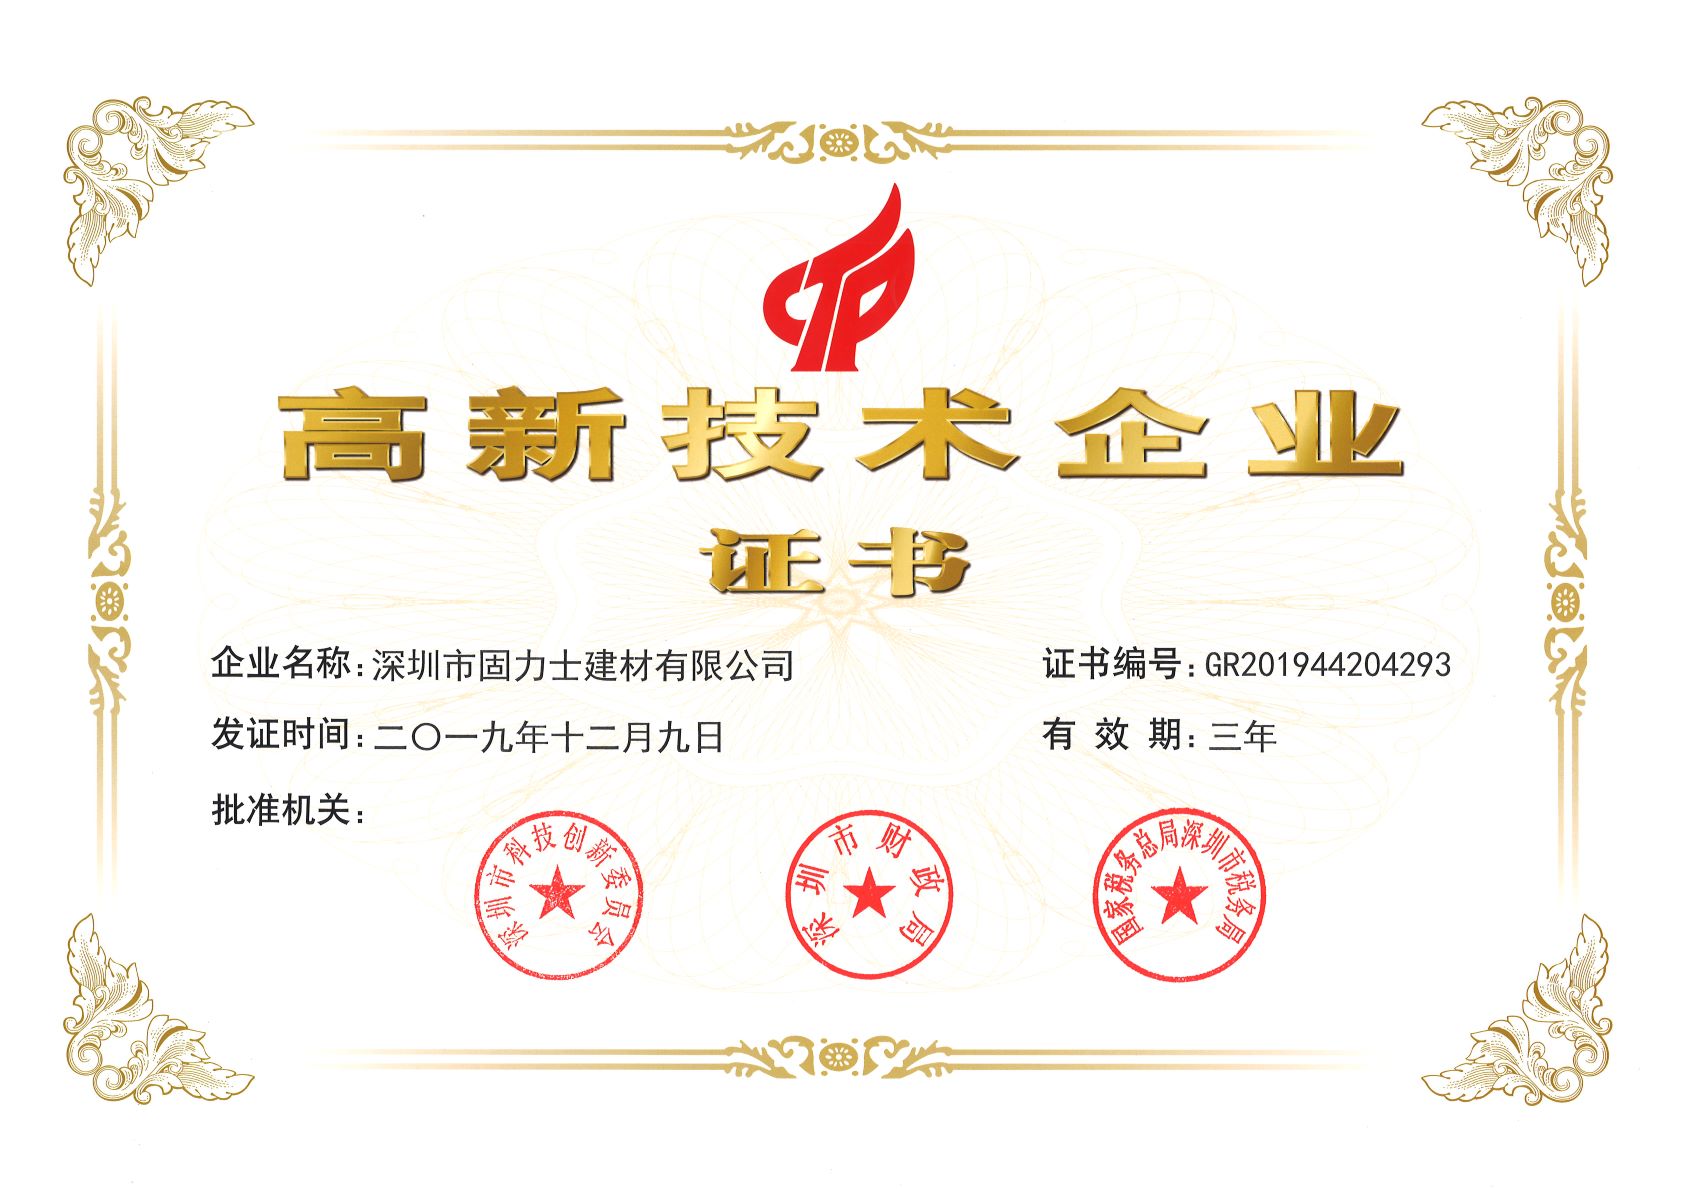 加格达奇热烈祝贺深圳市固力士建材有限公司通过高新技术企业认证